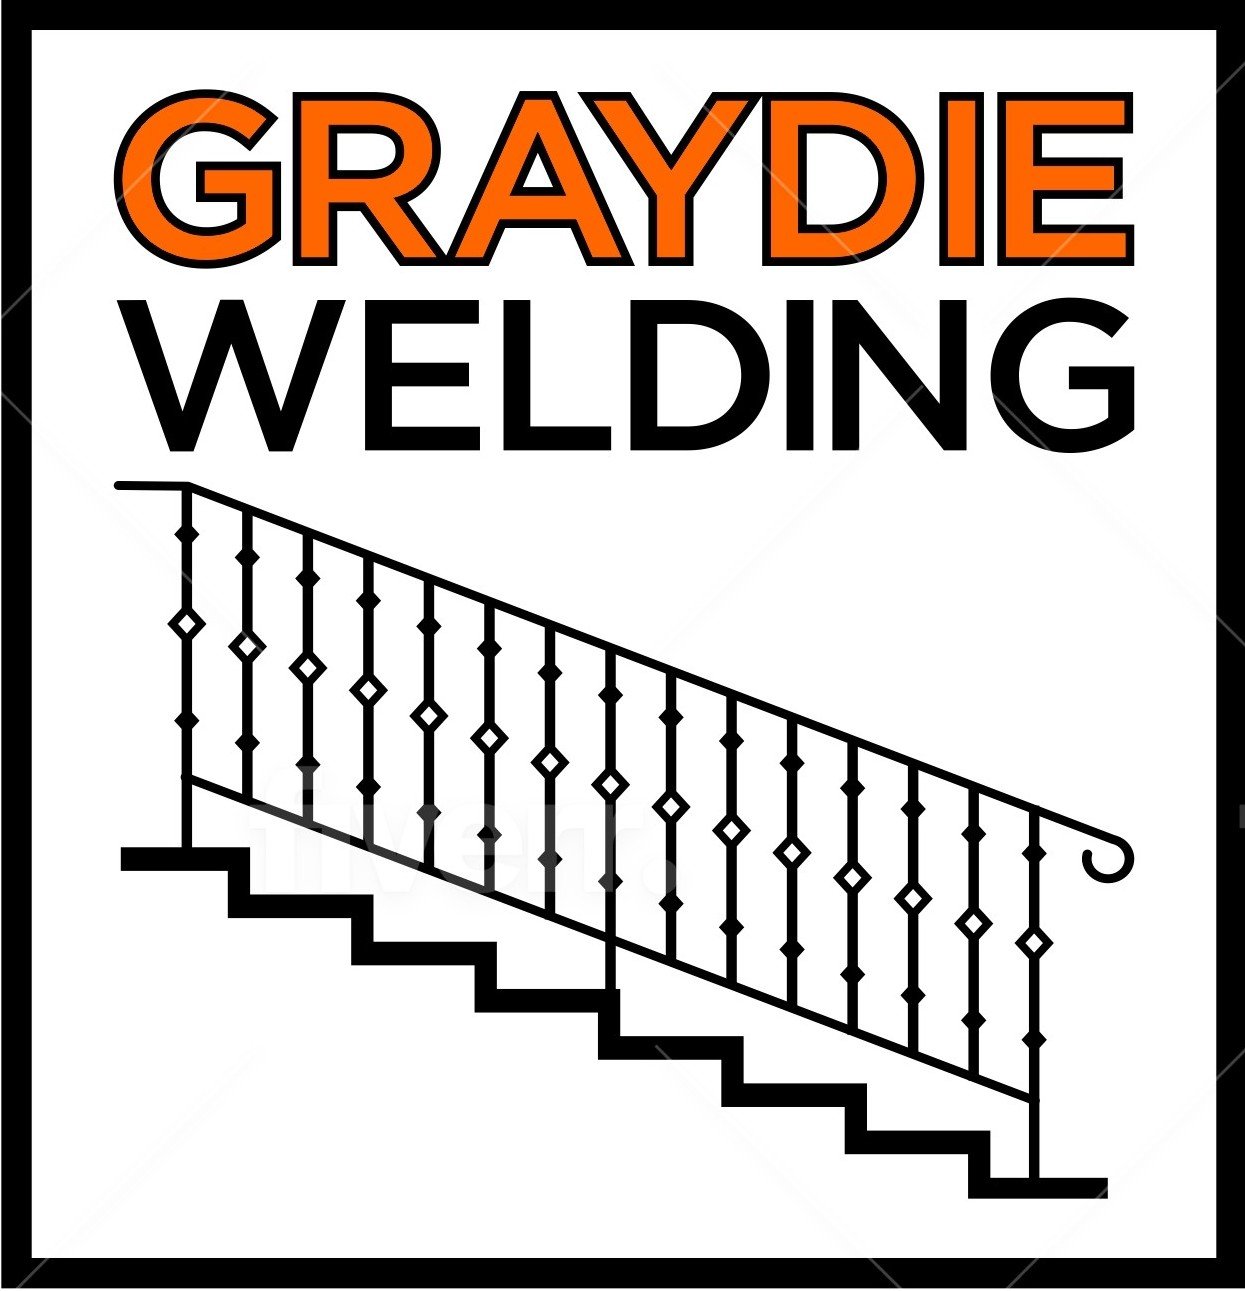 Graydie Welding